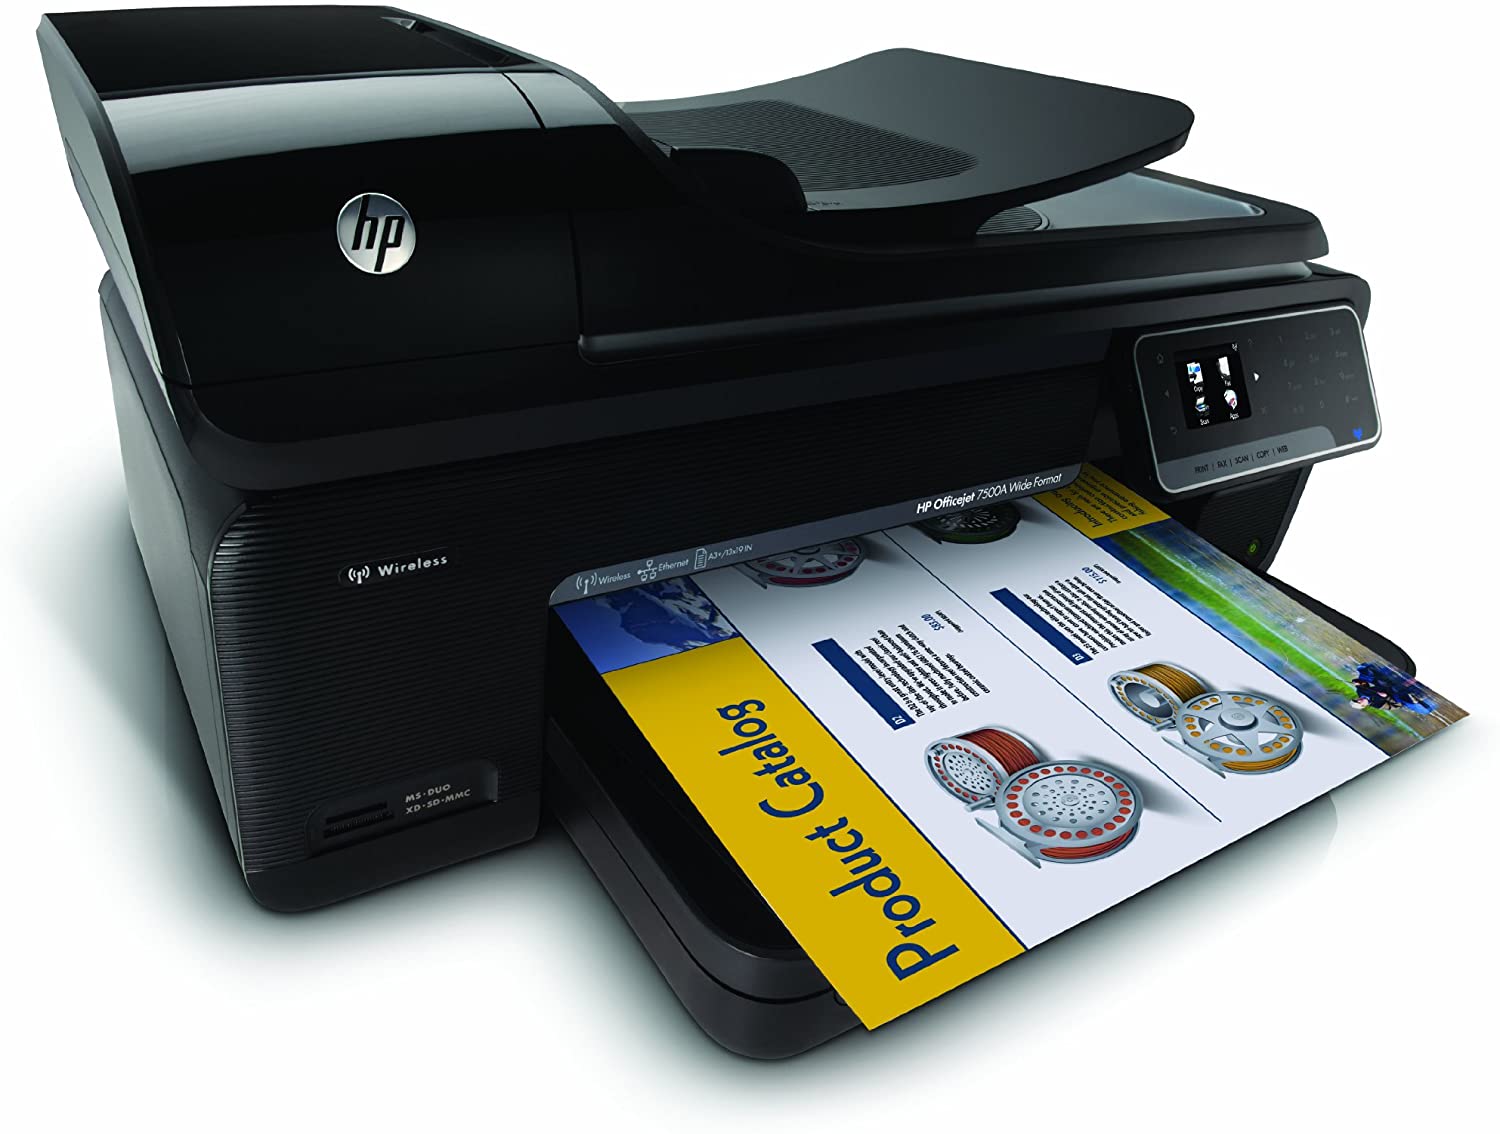 DruckerTreiber: HP officejet 7500a Treiber Download Kostenlos